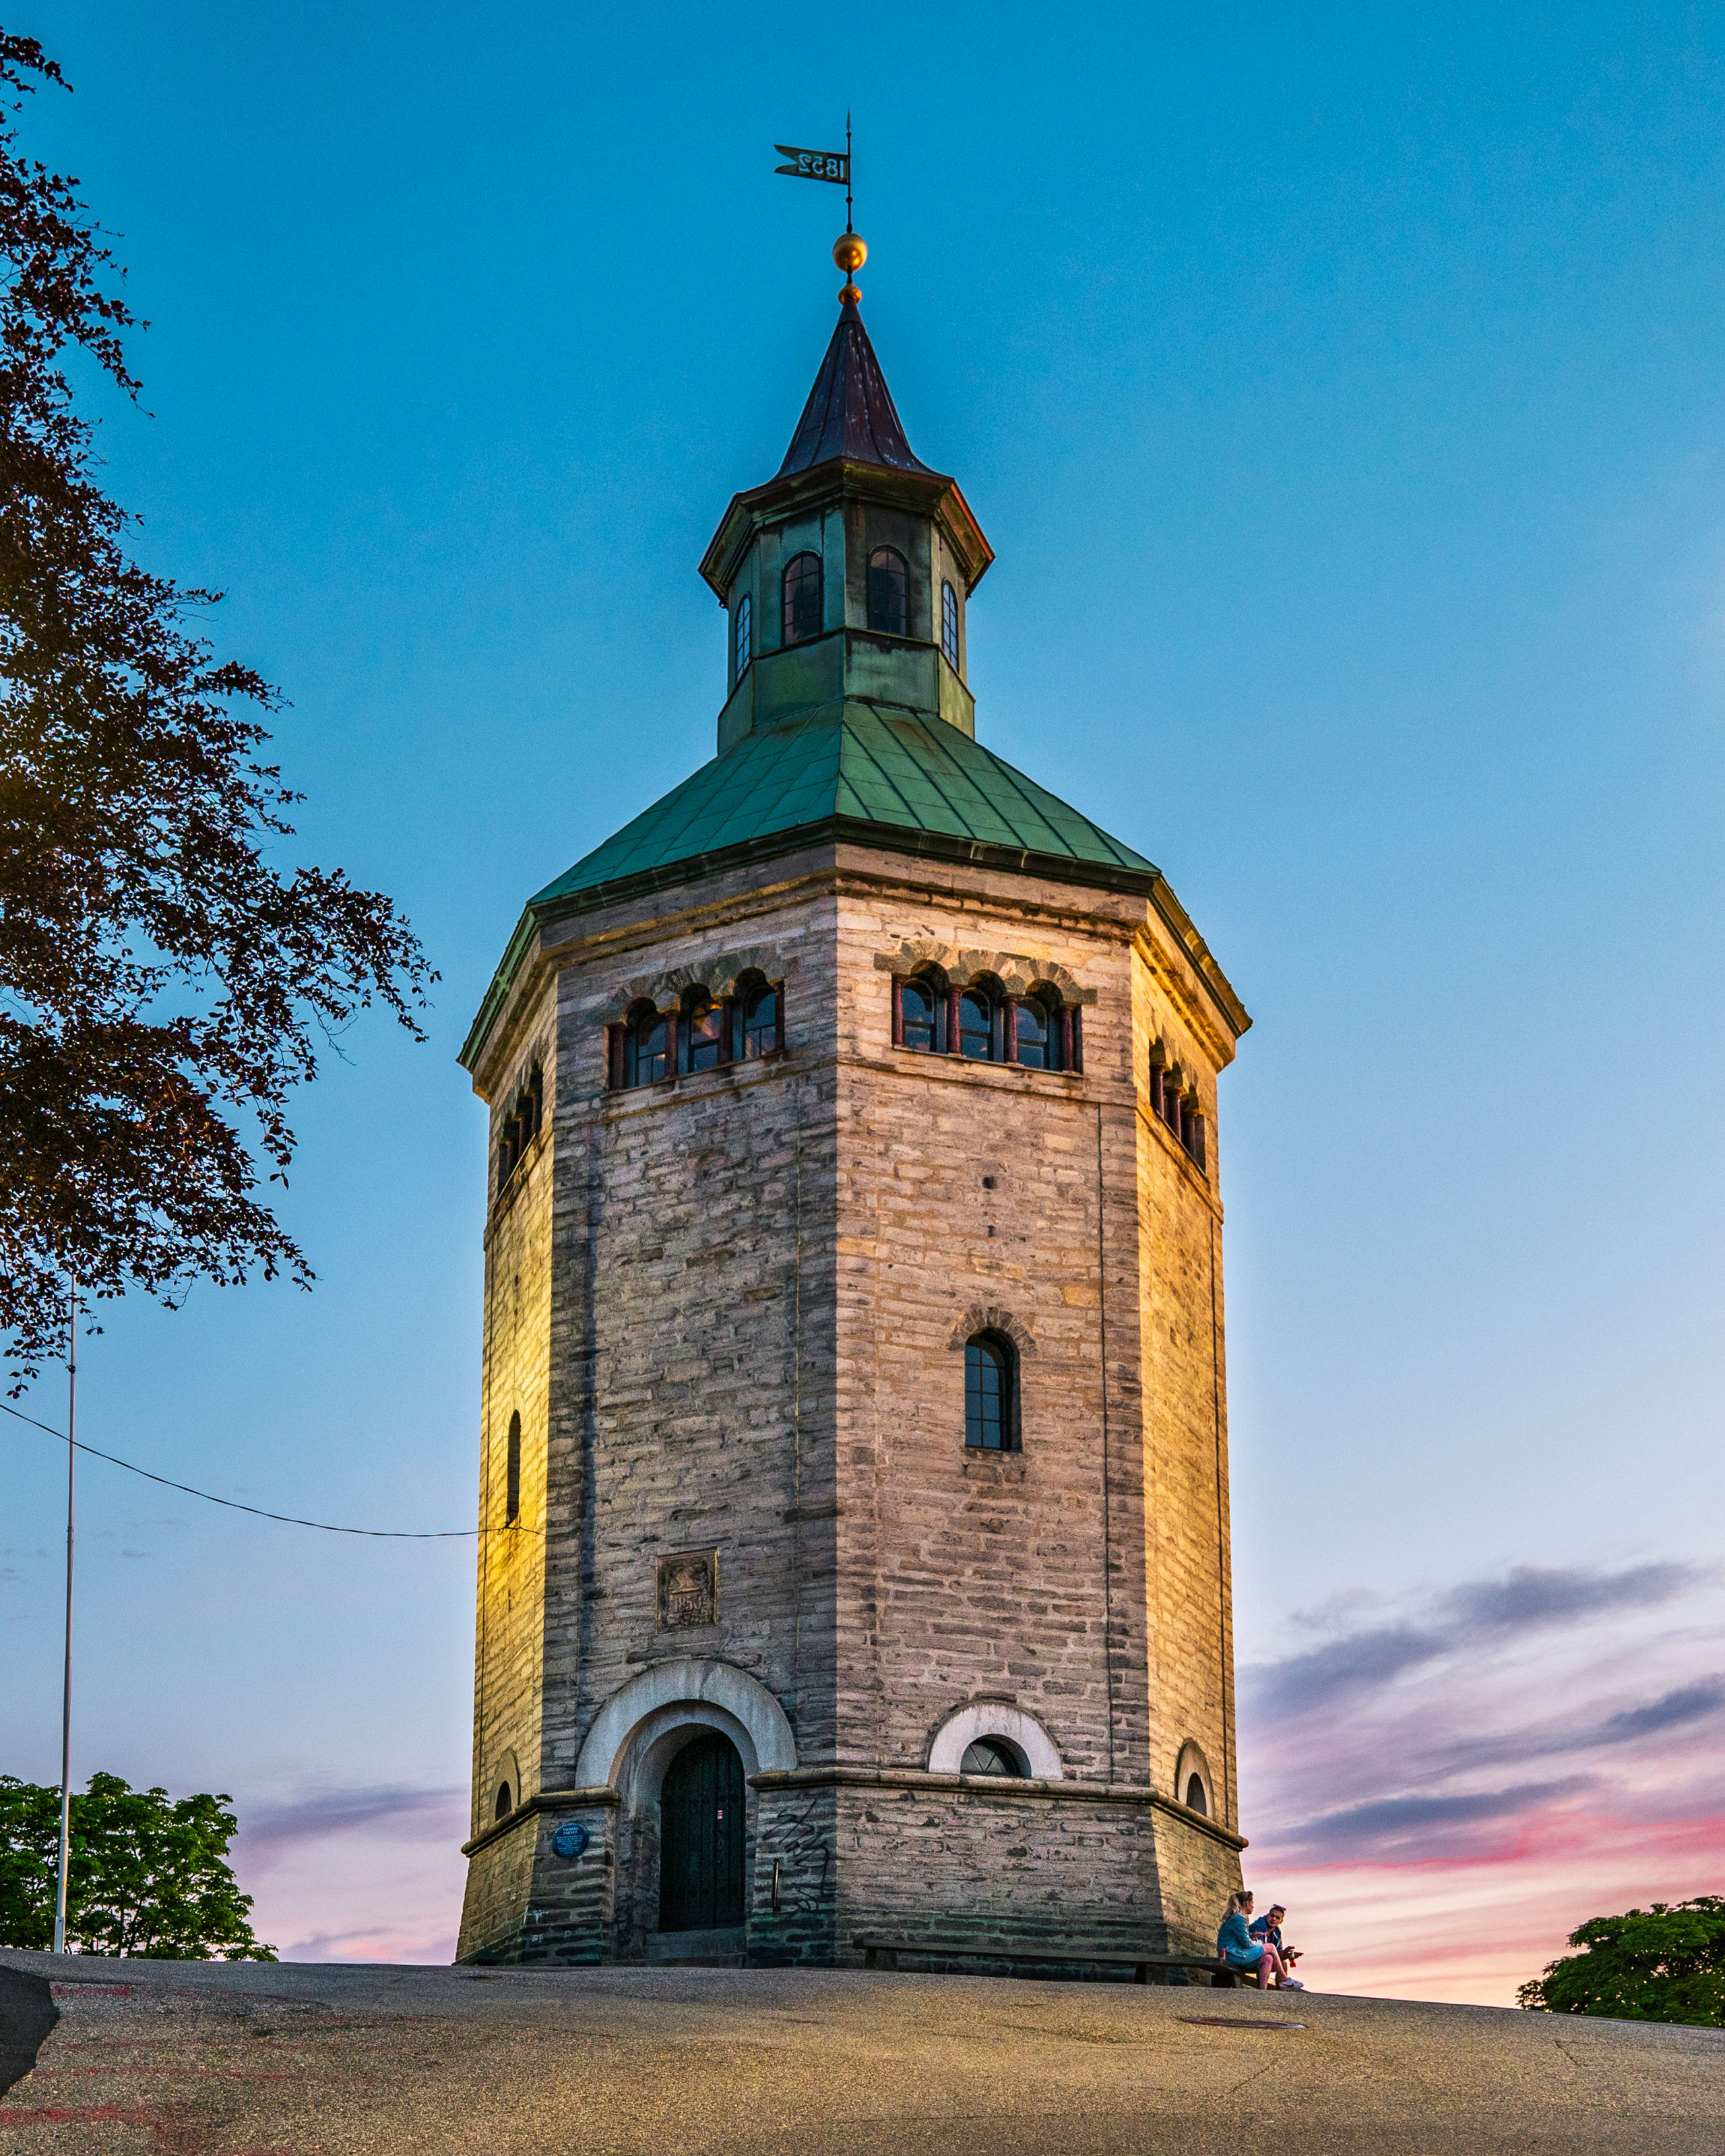 Valberg tower in Stavanger